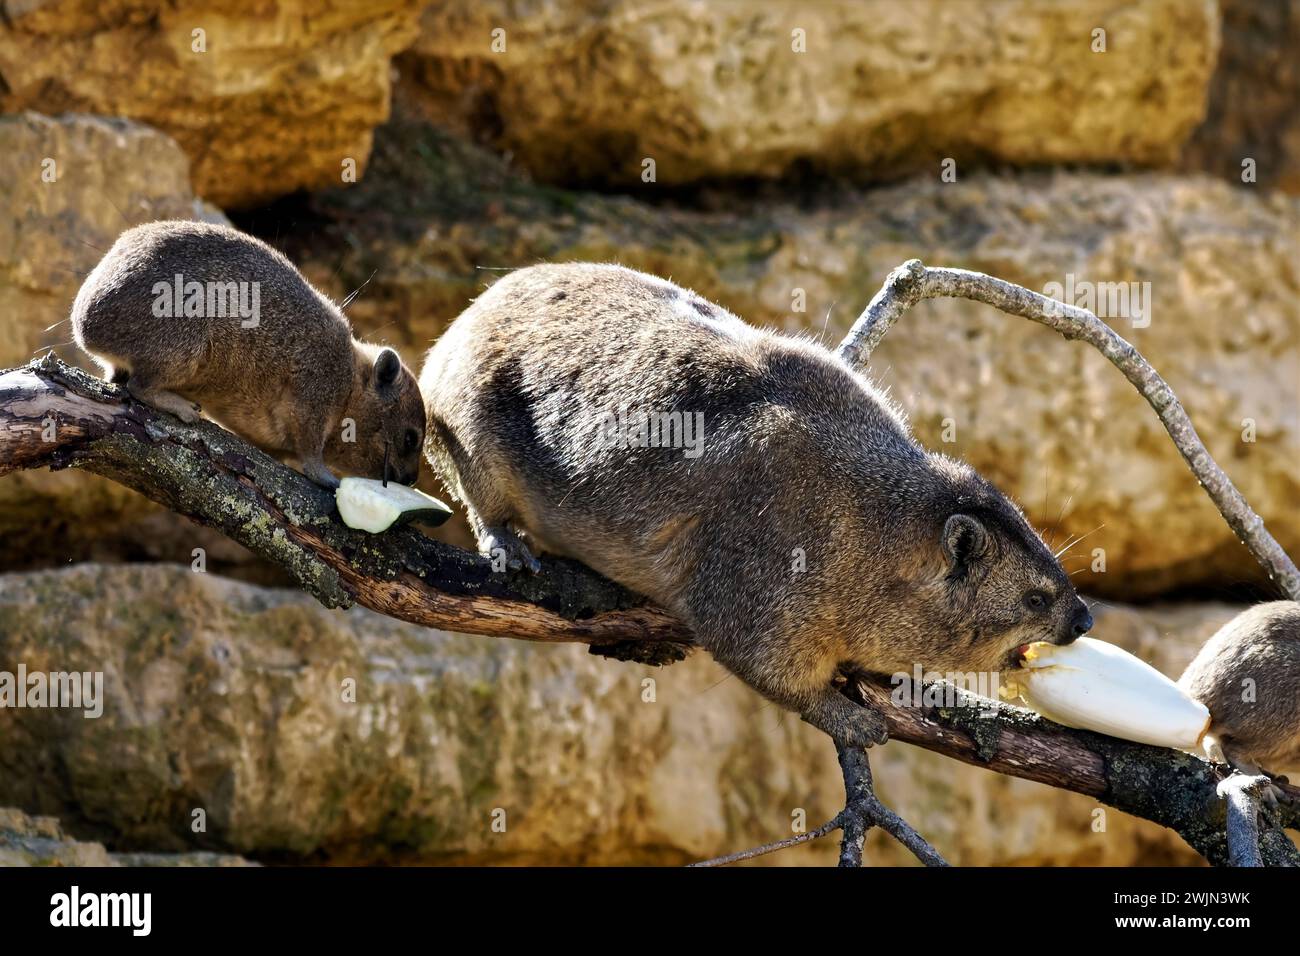 Trois hyrax rocheux (Procavia capensis) également appelé dassie, hyrax du Cap, lapin rocheux, mangeant des légumes sur pierre Banque D'Images